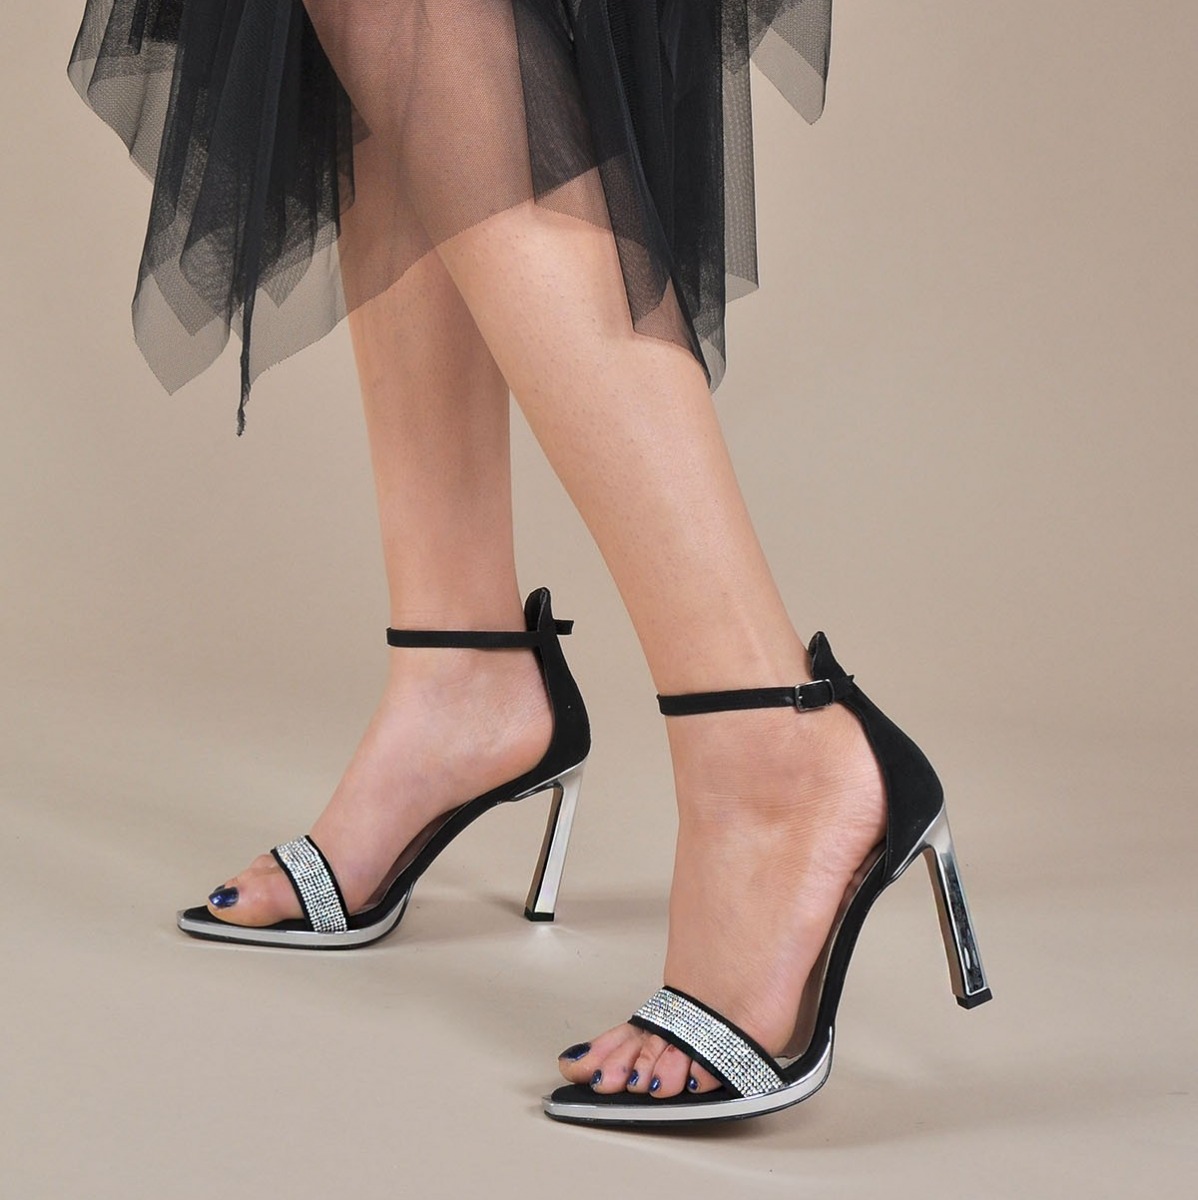 Flo Kadın Siyah Süet Klasik Topuklu Ayakkabı VZN20-179Y. 1